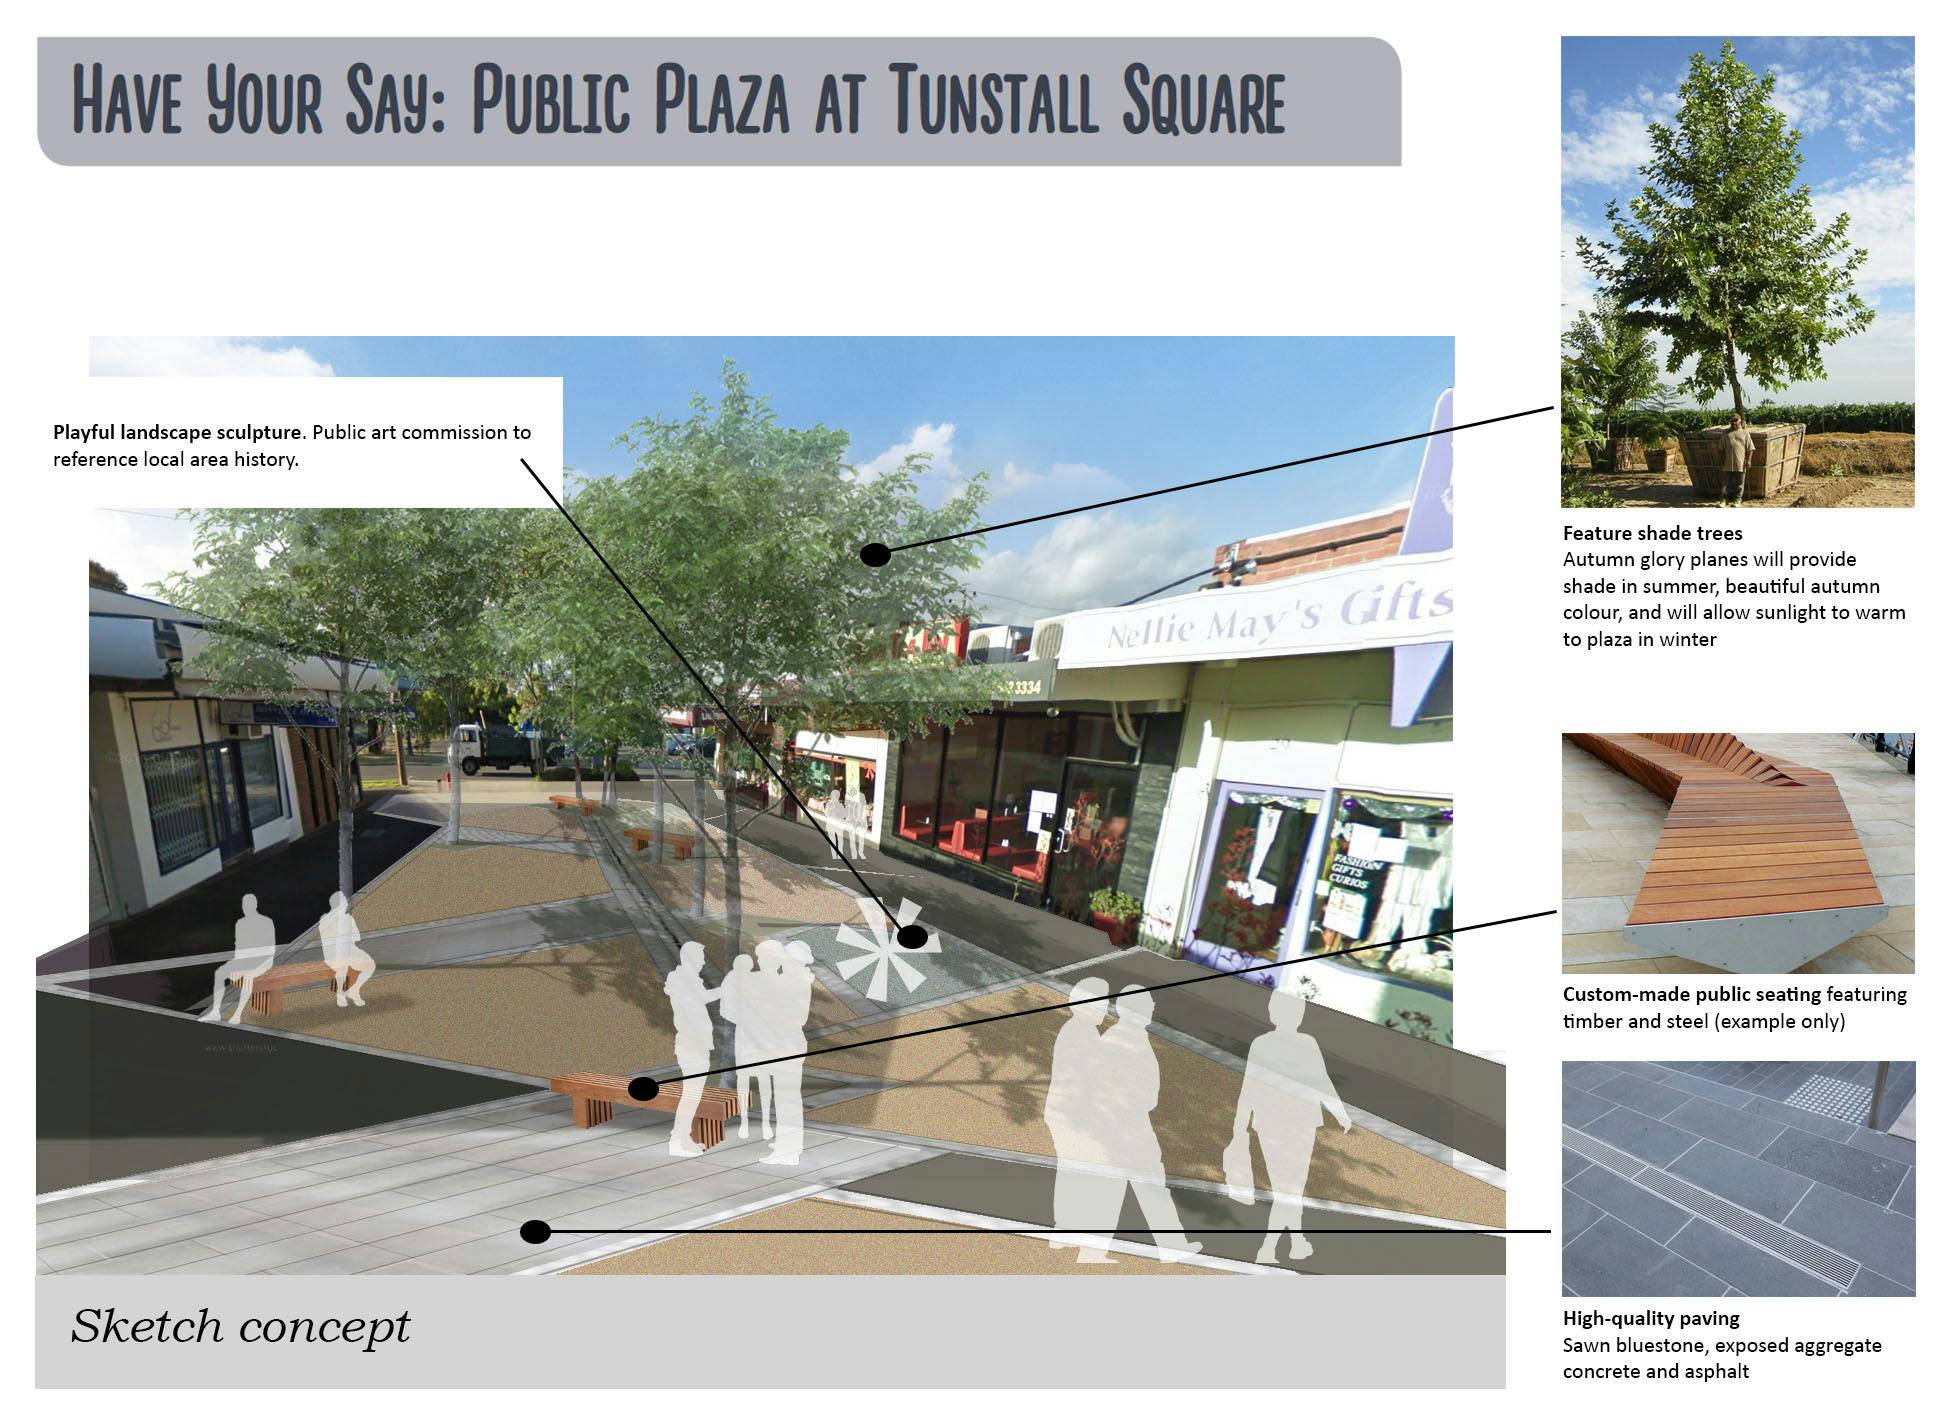 Tunstall Square Public Plaza Sketch Concept